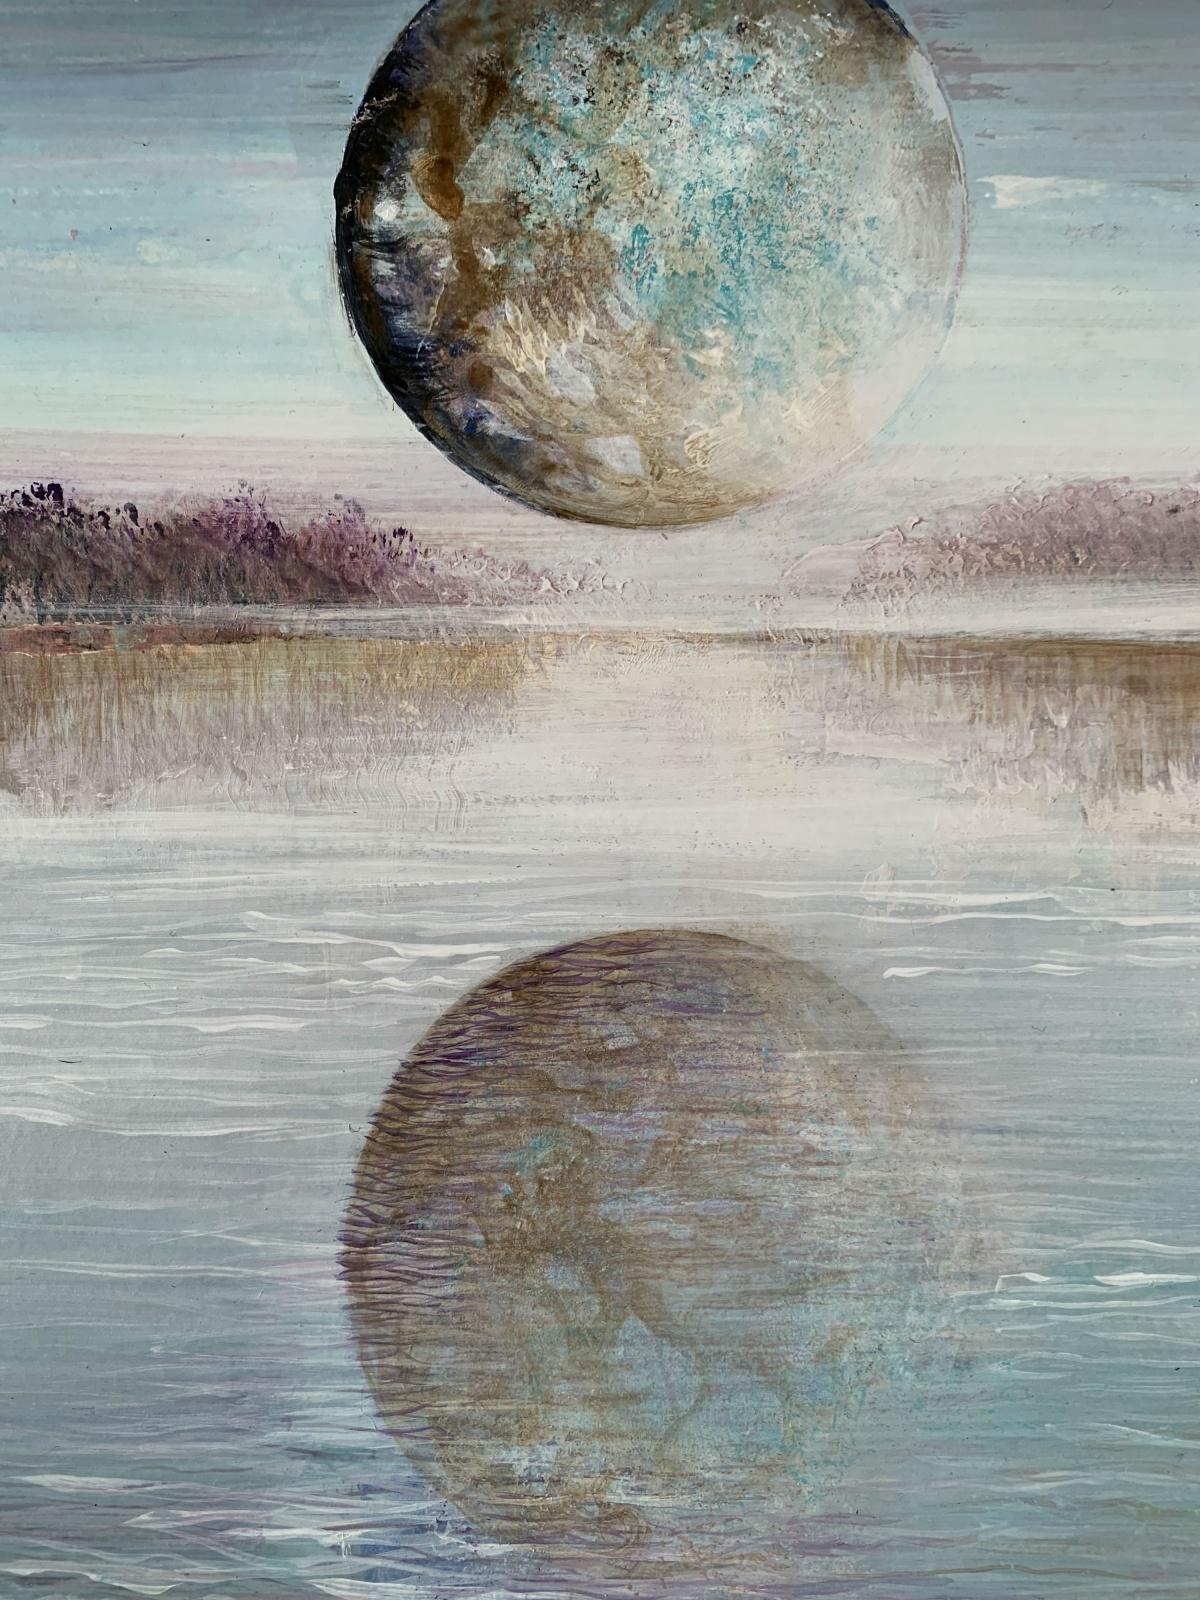 Zeitgenössische figurative Acrylmalerei auf Karton von der polnischen Künstlerin Barbara Hubert. Das Gemälde zeigt eine Landschaft oder vielmehr eine Wasserlandschaft mit Vollmond, der sich im Wasser spiegelt. Die Farben sind sanfte, pastellige